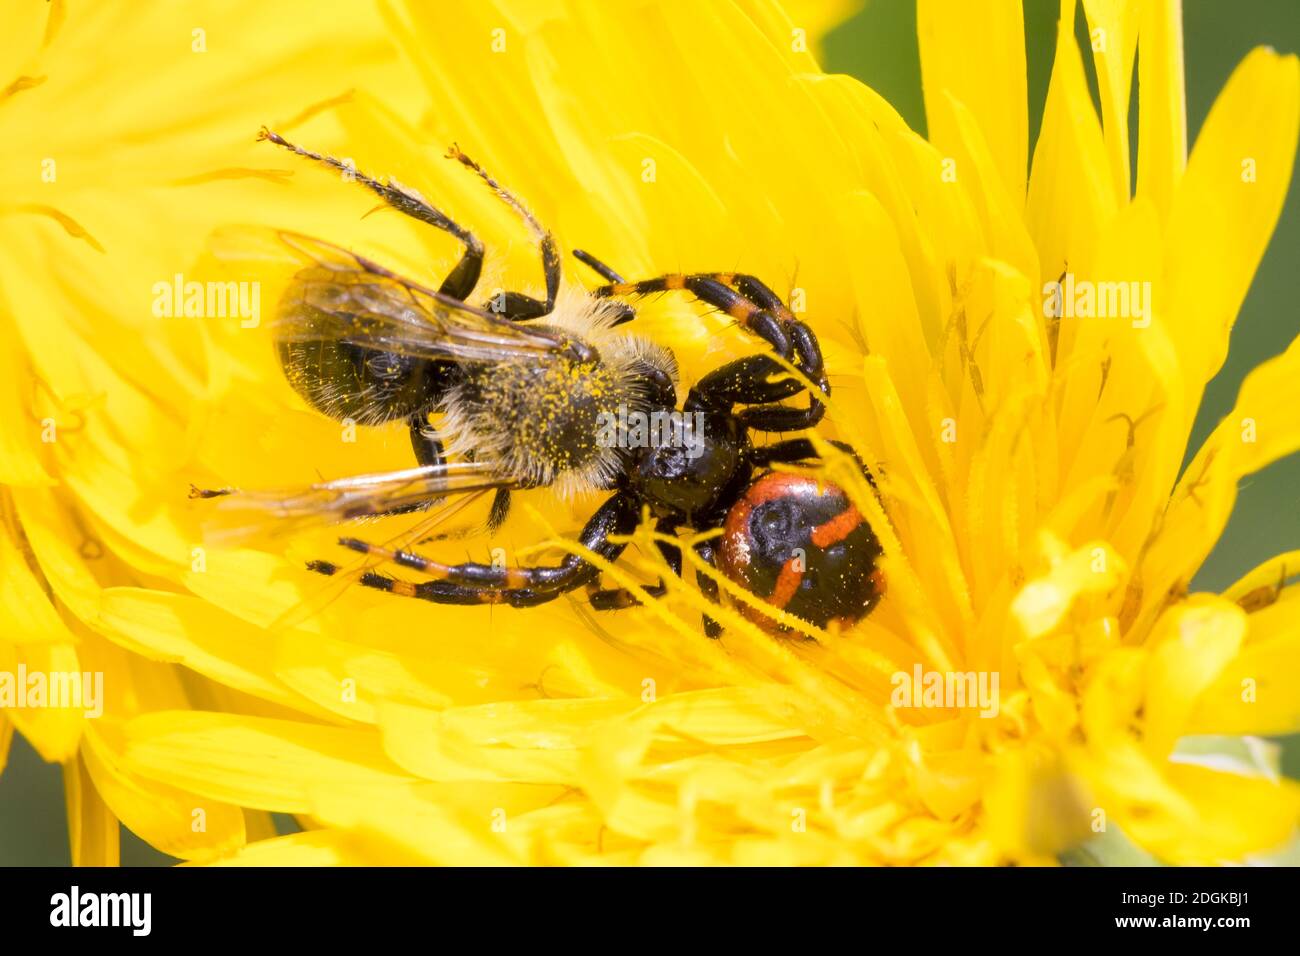 Südliche Glanz-Krabbenspinne, Hat eine Biene erbeutet, Beute, Räuber-Beute-Beziehung, Südliche Glanzkrabbenspinne, Krabbenspinne, Synema globosum, Syn Banque D'Images